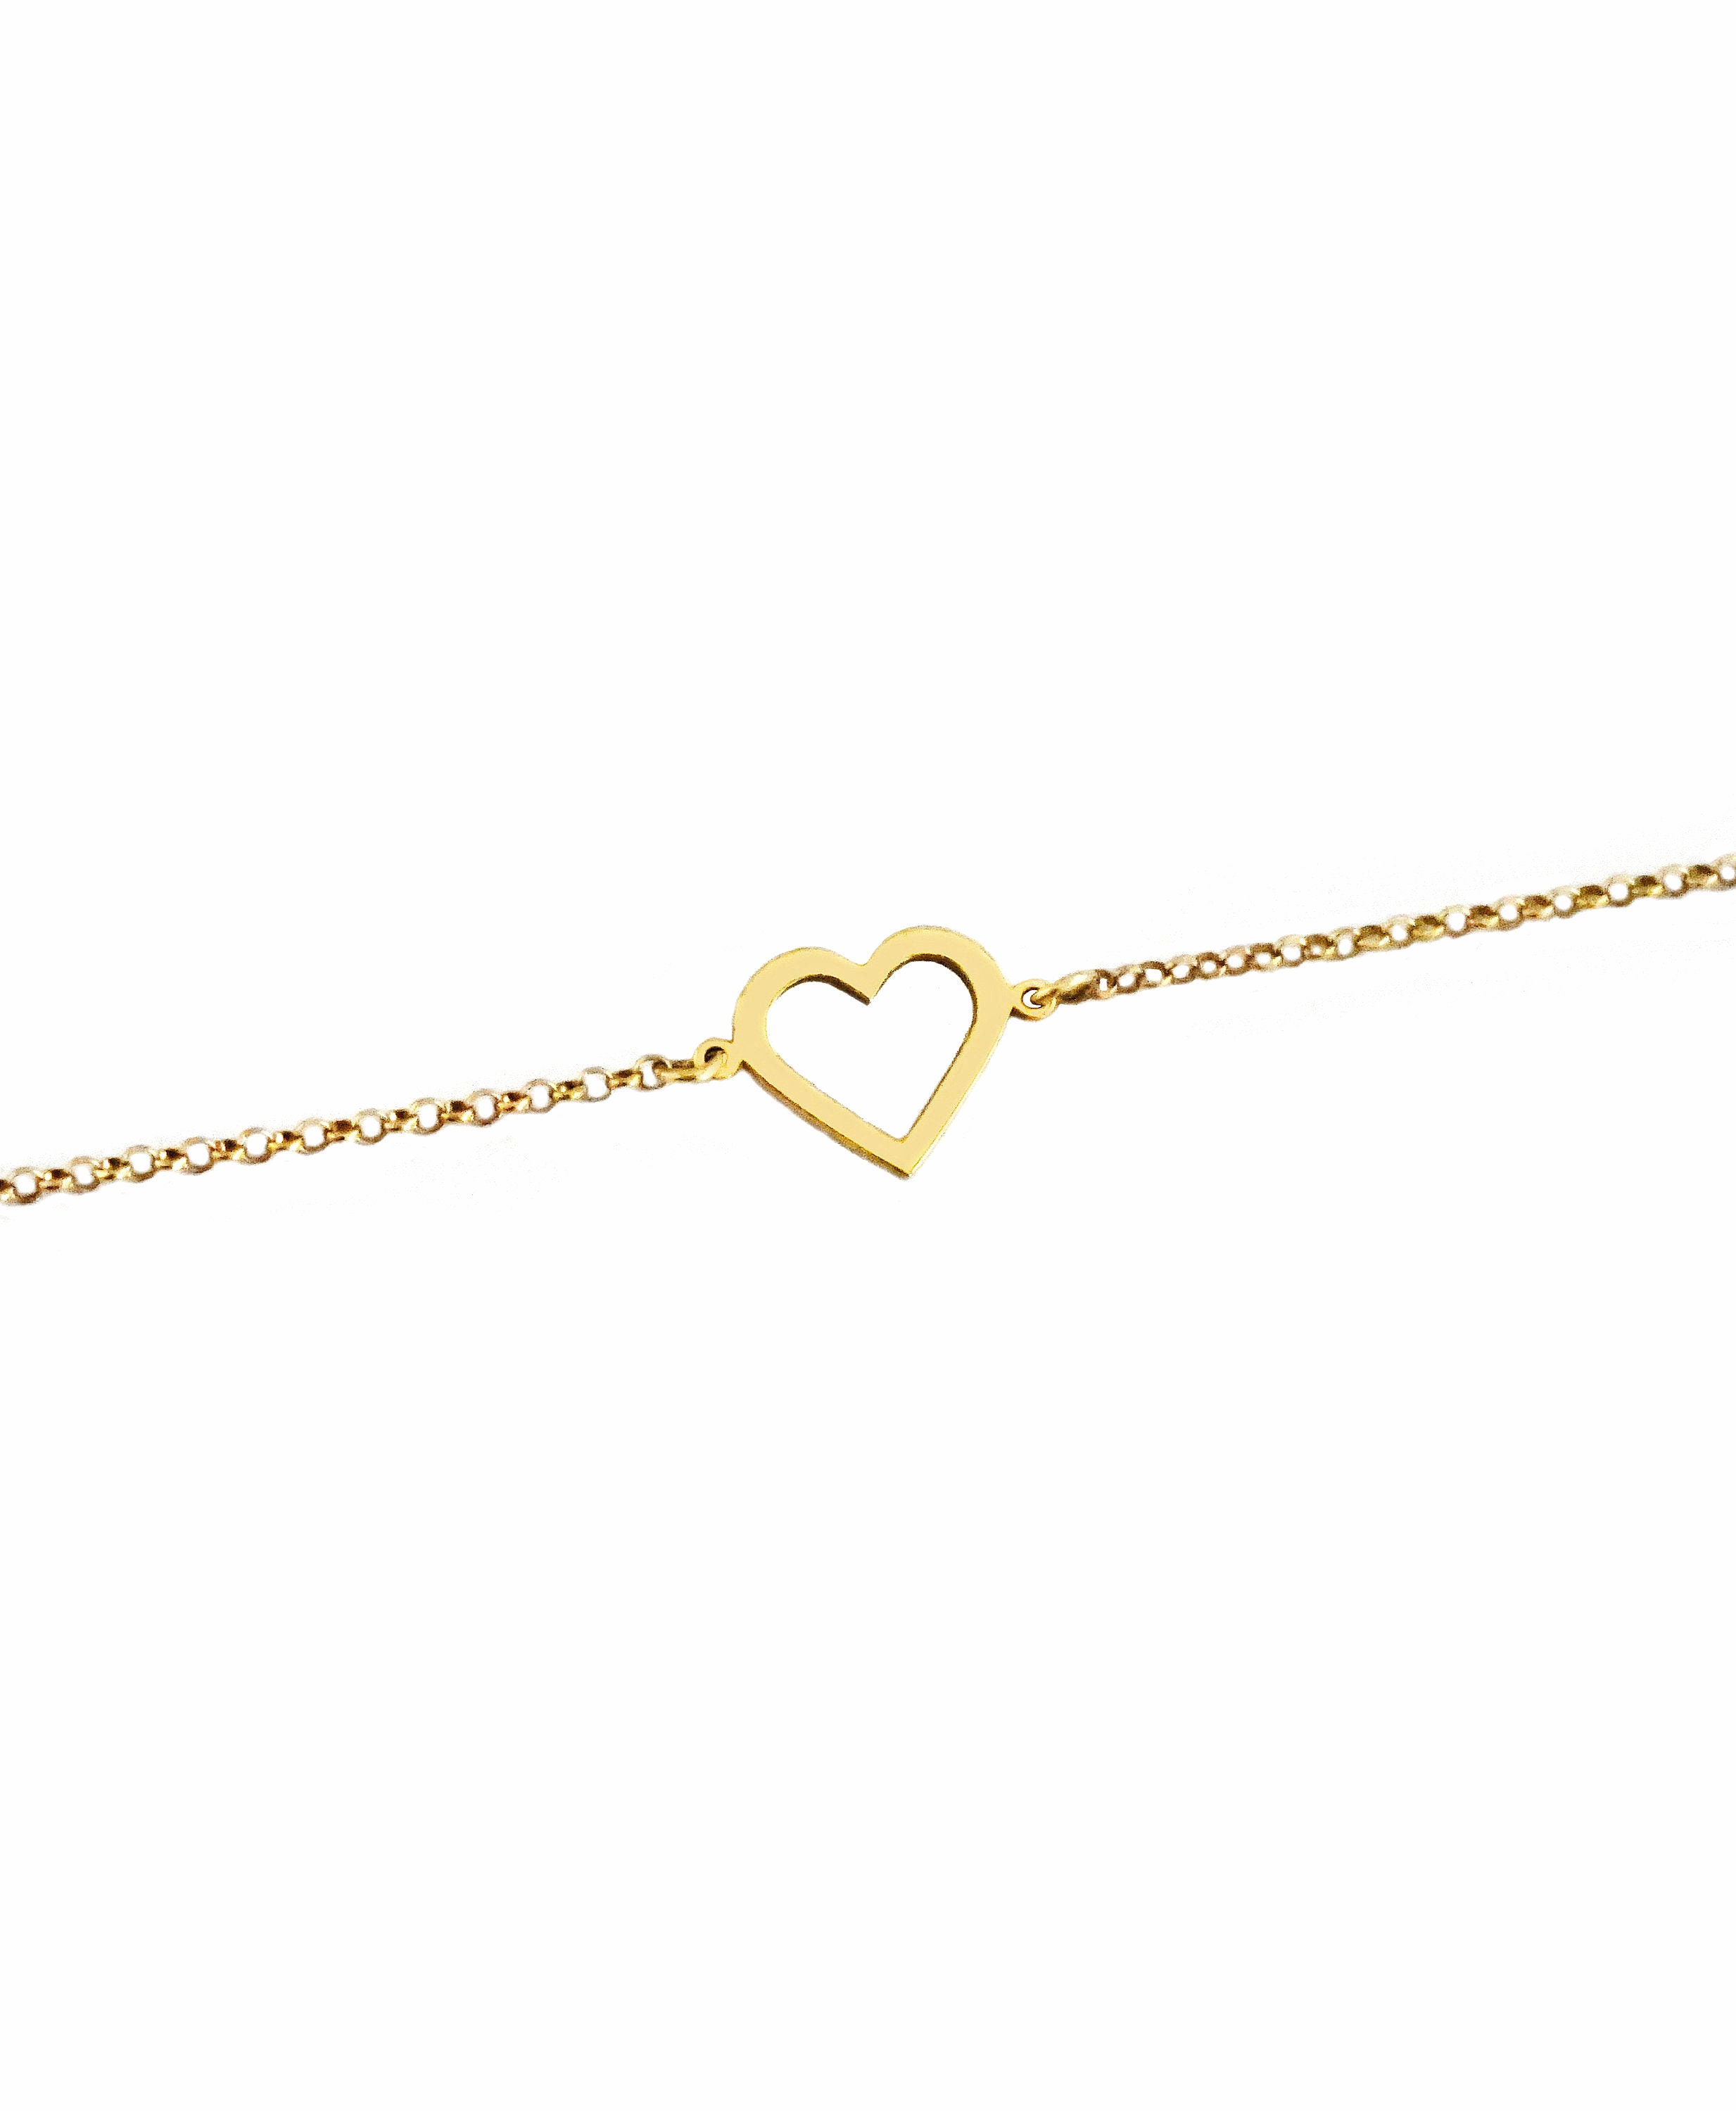 Gold Dainty Heart Charm, 9k 14K 18K Rose Gold Bracelet, Solid Gold Heart Frame, Love Forever Gift for Her, Romantic Heart Jewelry for Women